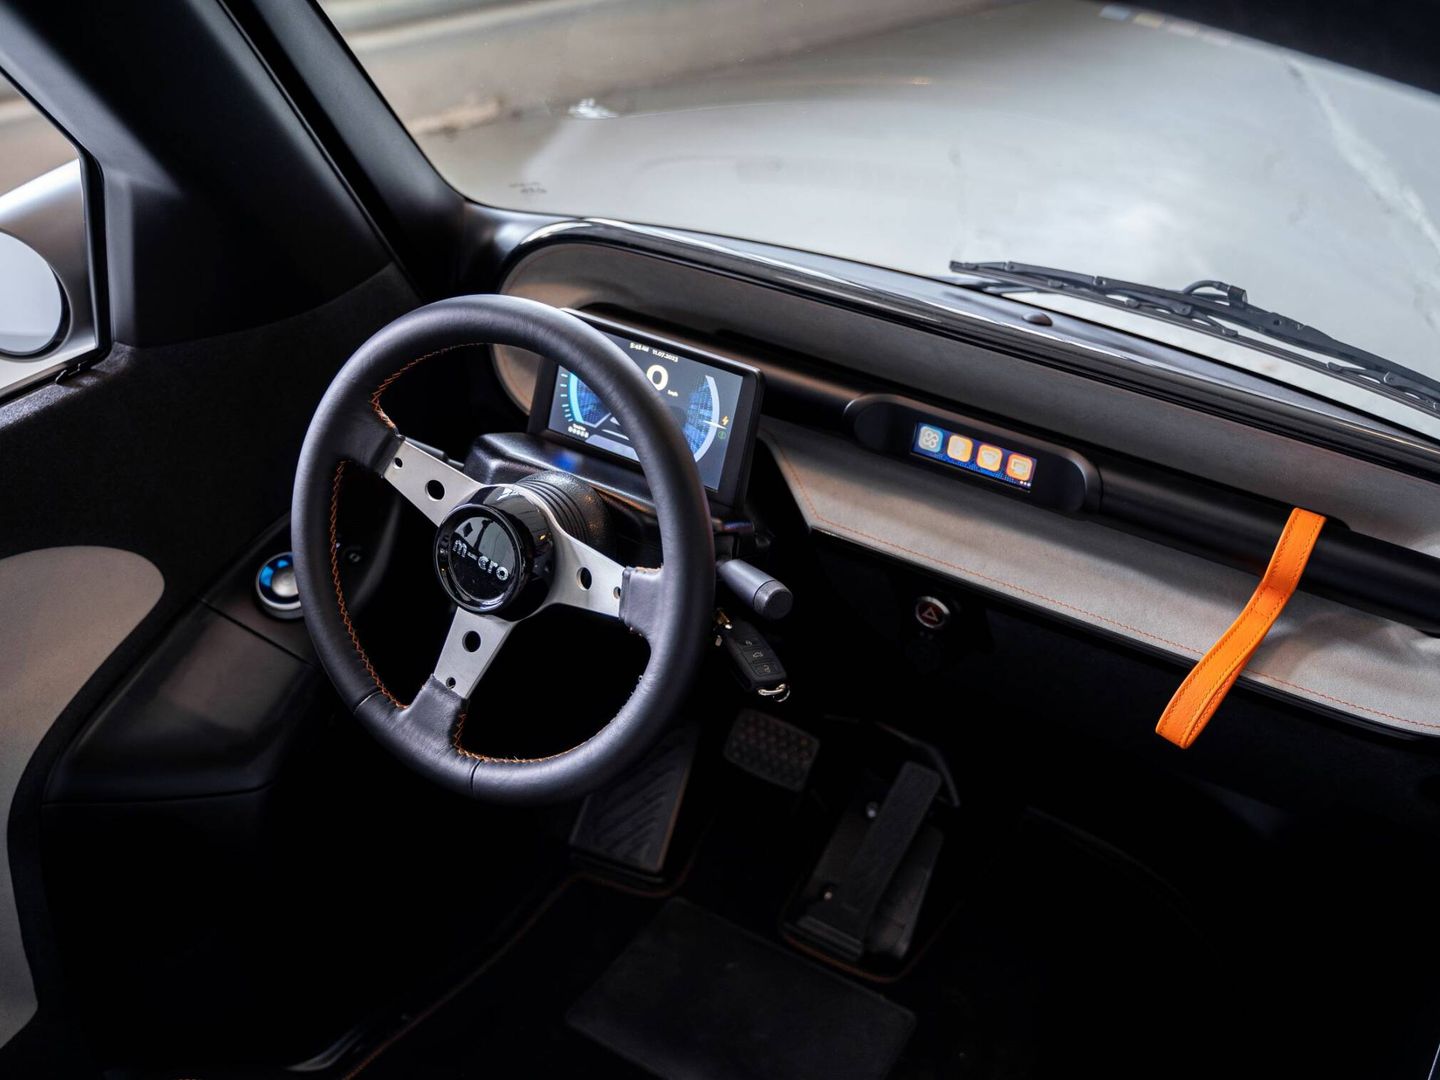 Instrumentación digital y volante sin airbag. A la derecha se ve el tirador de la puerta frontal.